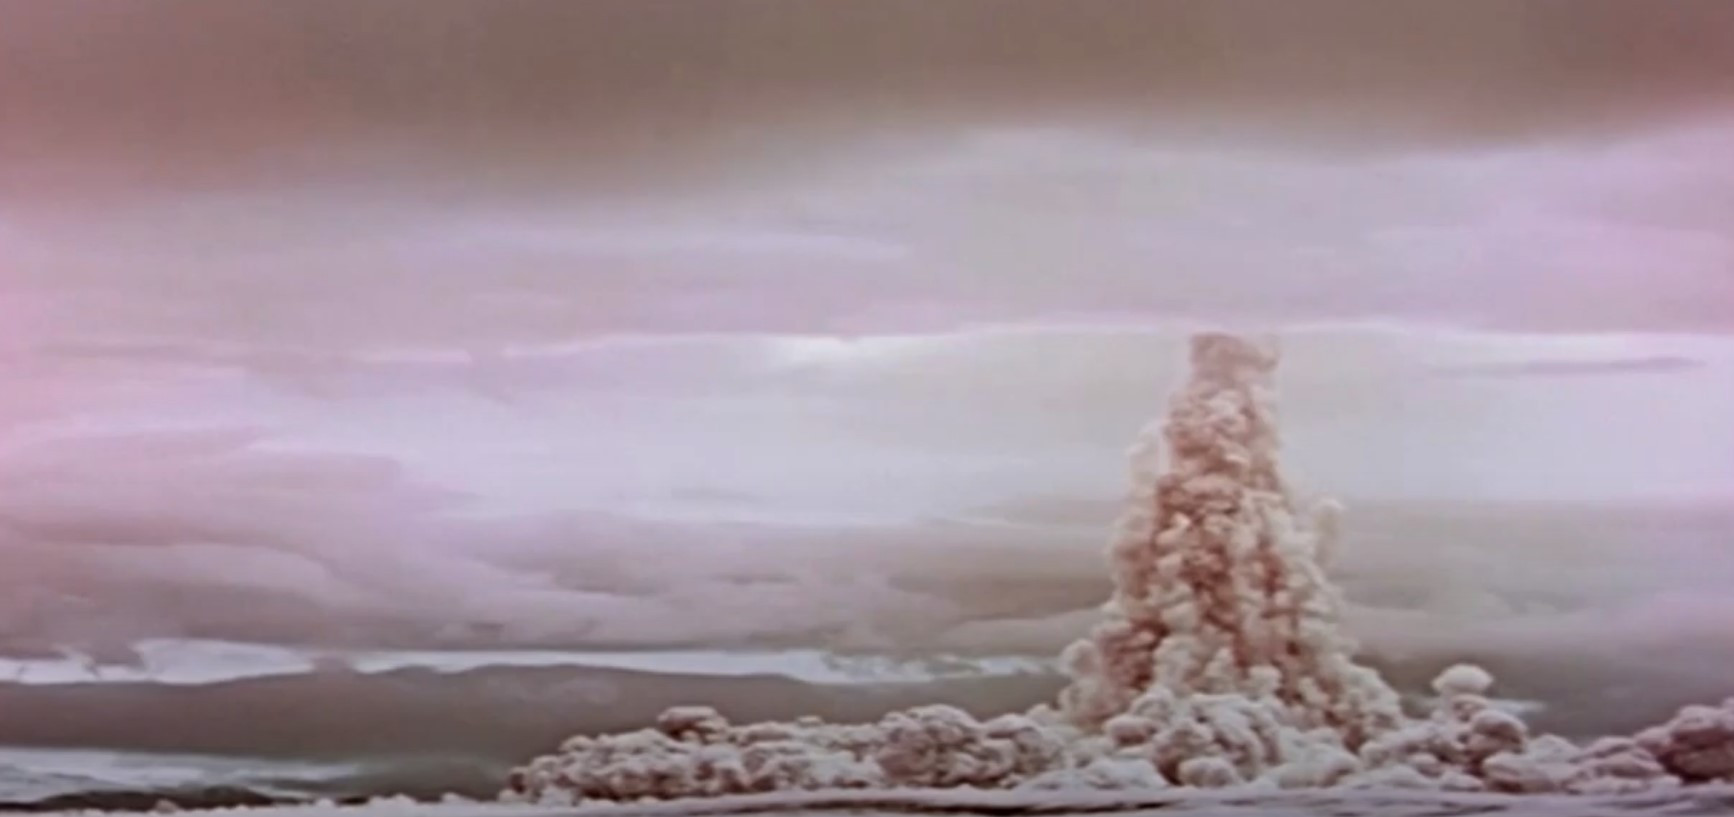 Η Ρωσία δημοσιοποίησε ταινία με την έκρηξη της μεγαλύτερης βόμβας υδρογόνου στην ιστορία [Βίντεο]